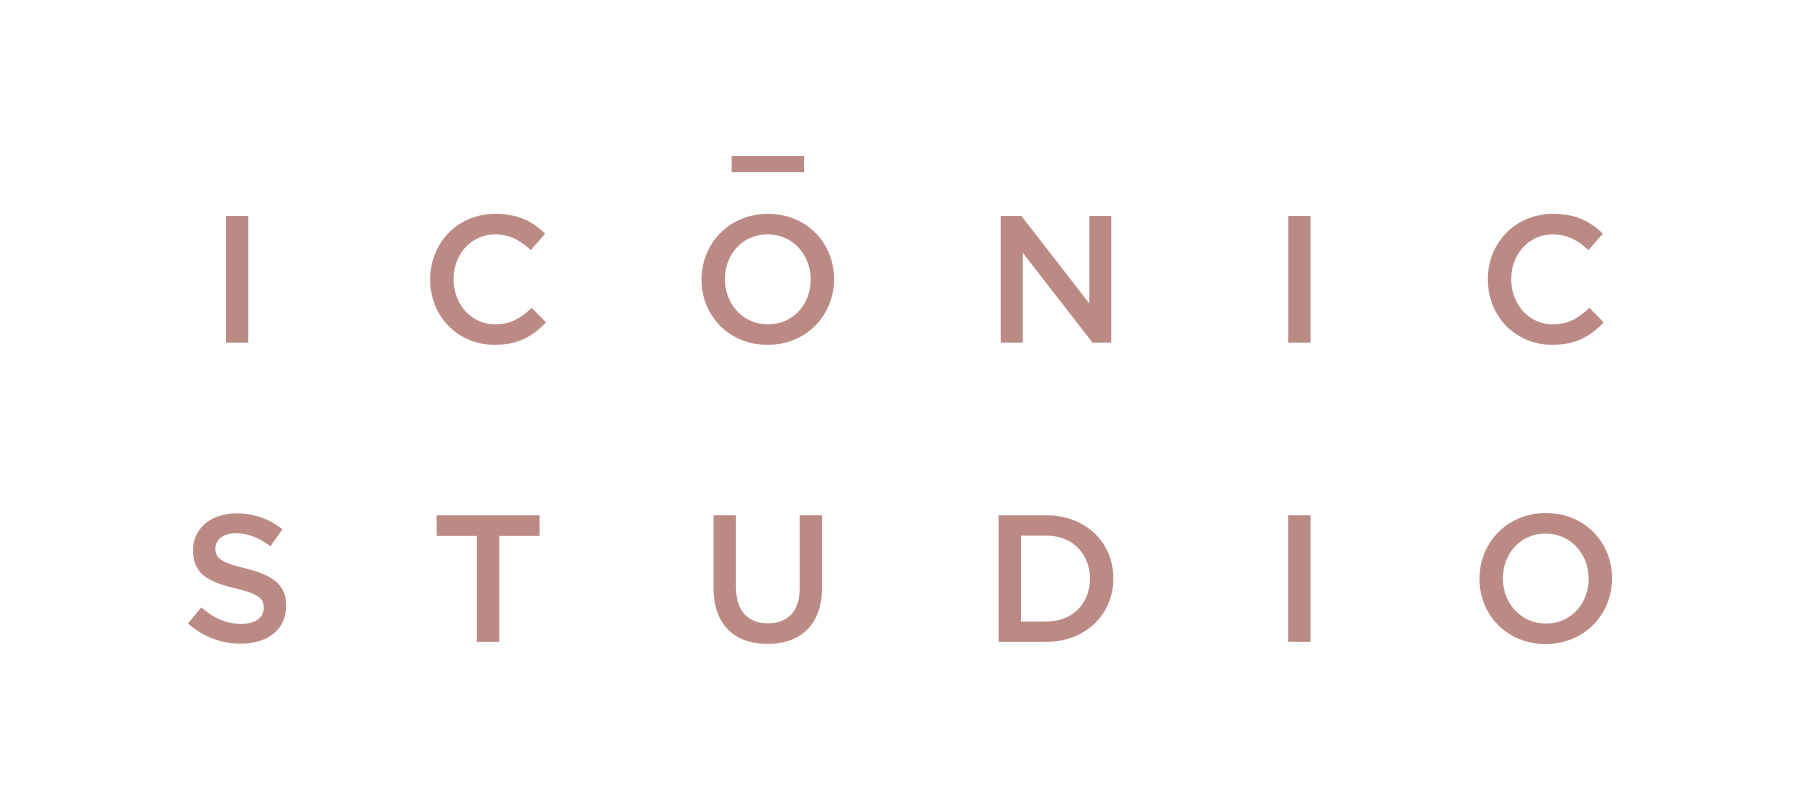 Iconic Studio